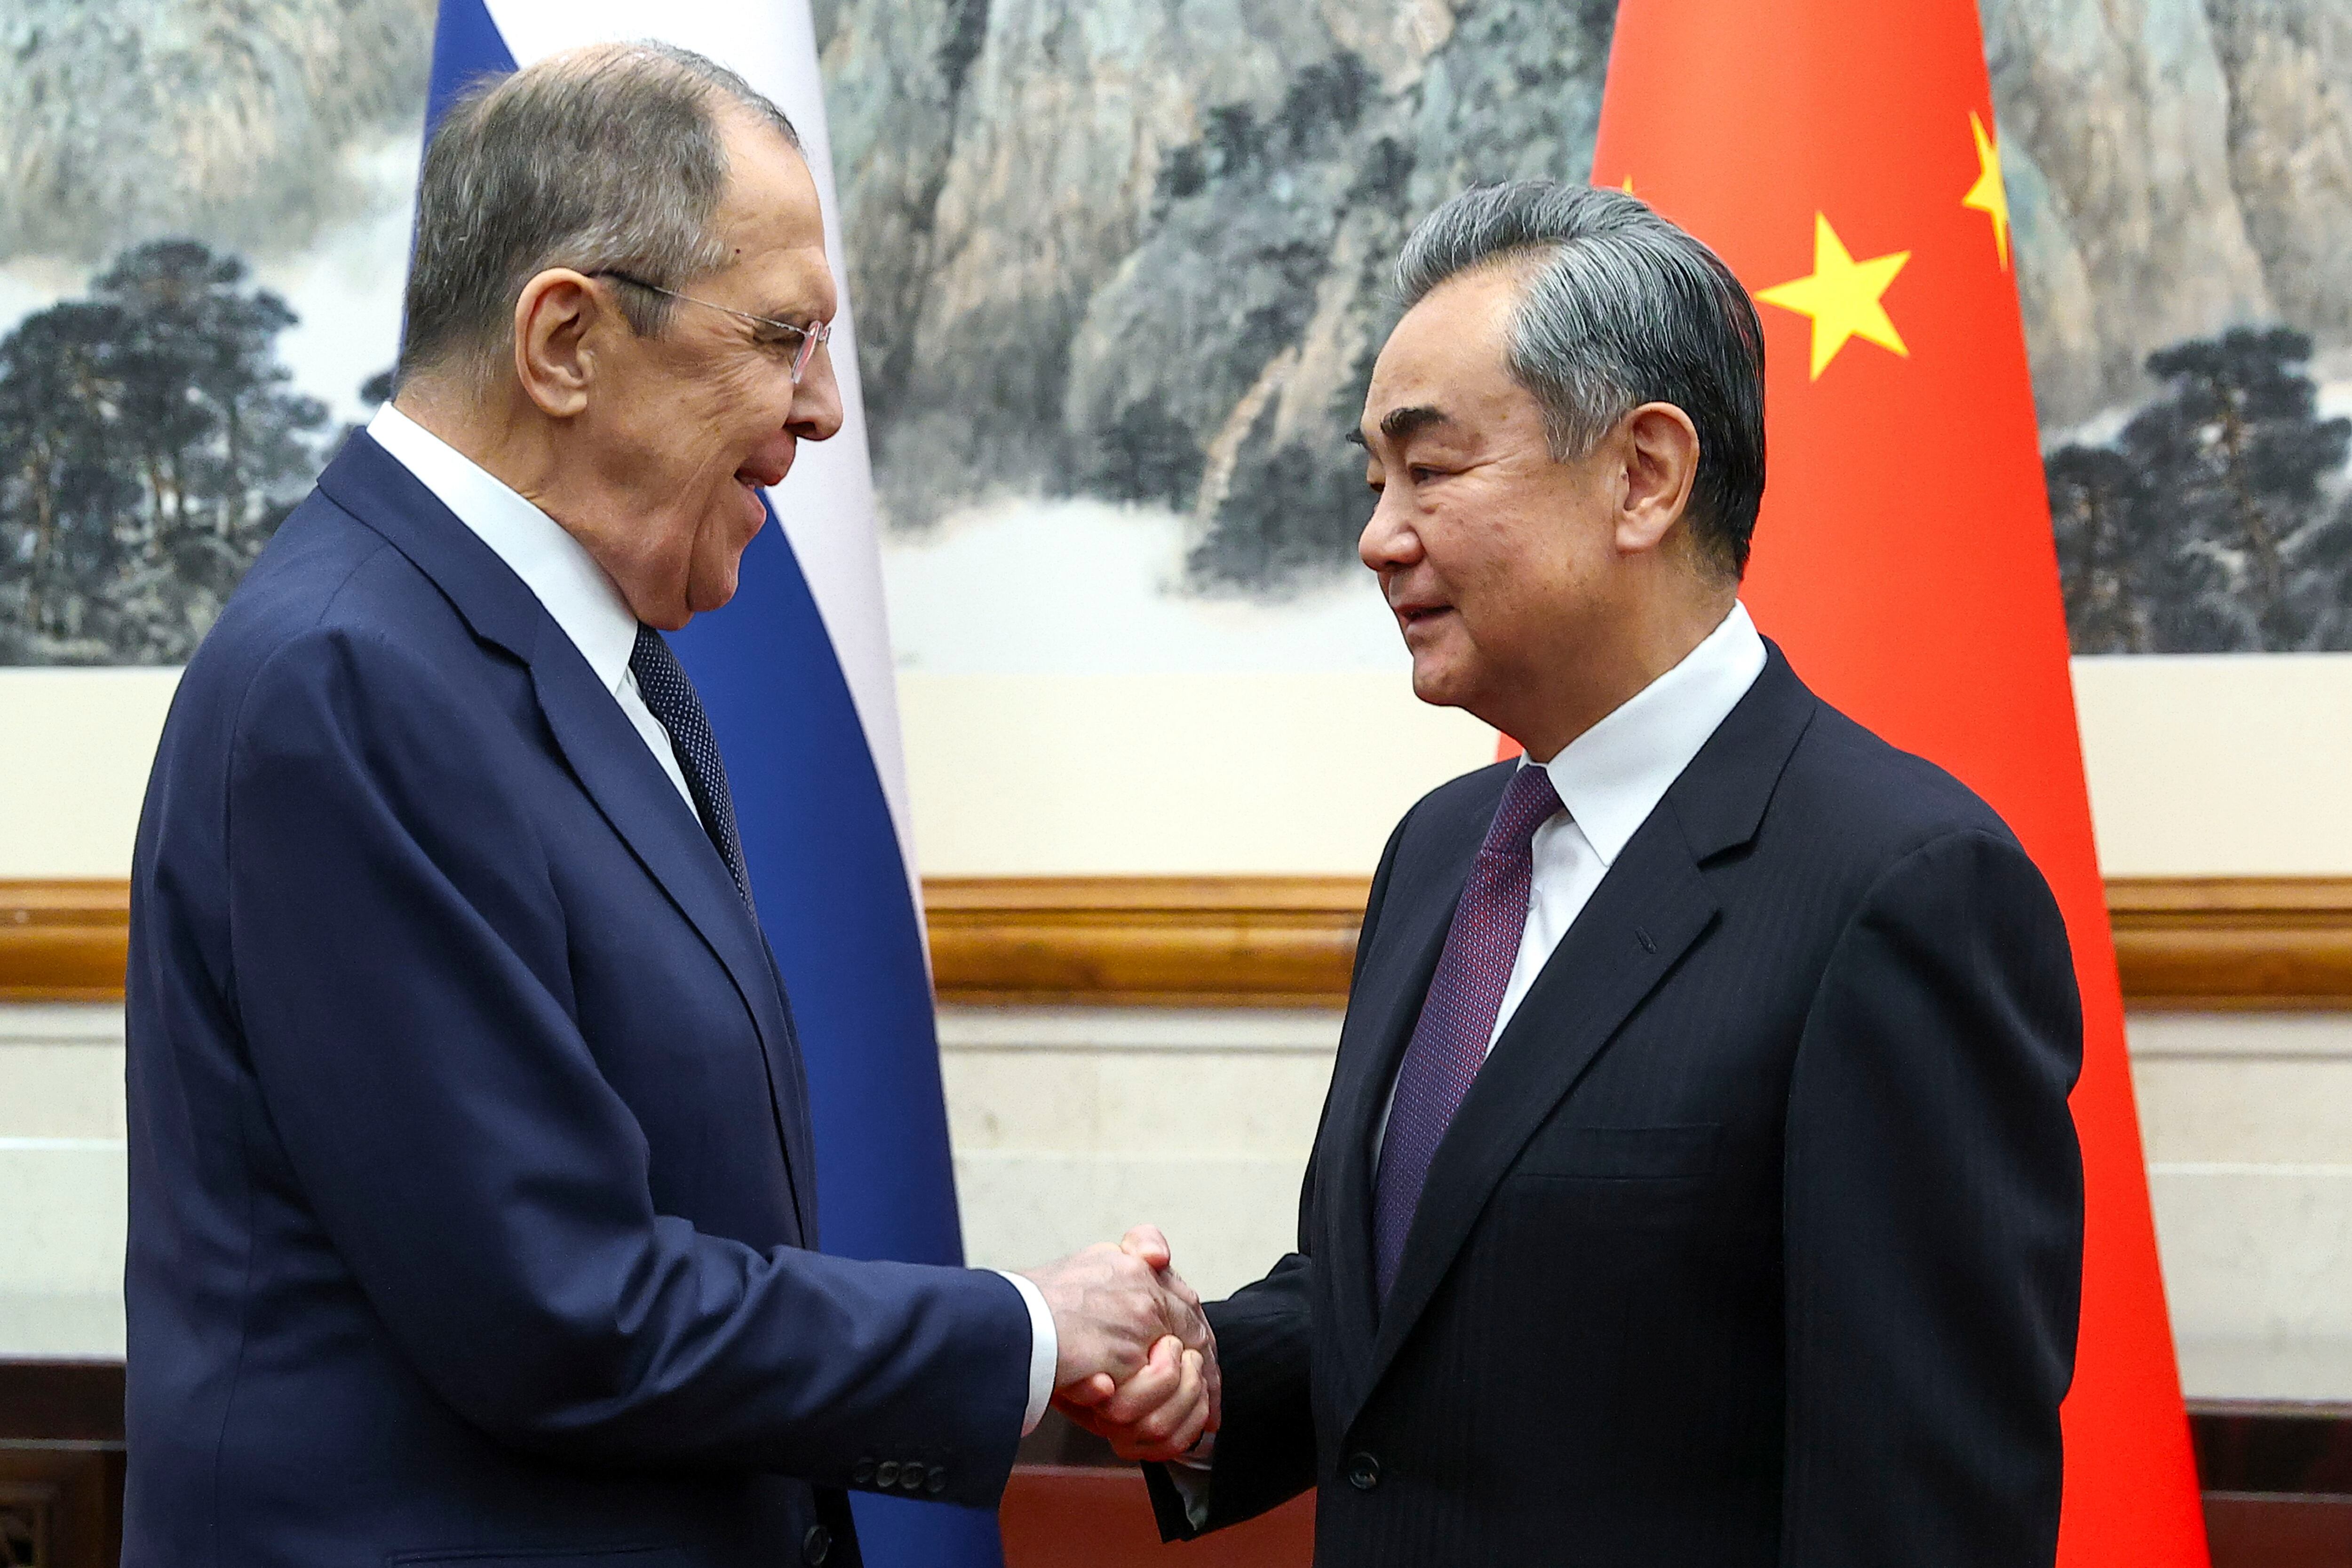 El ministro ruso de Exteriores, Serguéi Lavrov, a la izquierda, y el ministro chino de Exteriores, Wang Yi, se estrechan la mano antes de su reunión en Beijing, China. (Servicio de prensa del Ministerio ruso de Exteriores via AP)